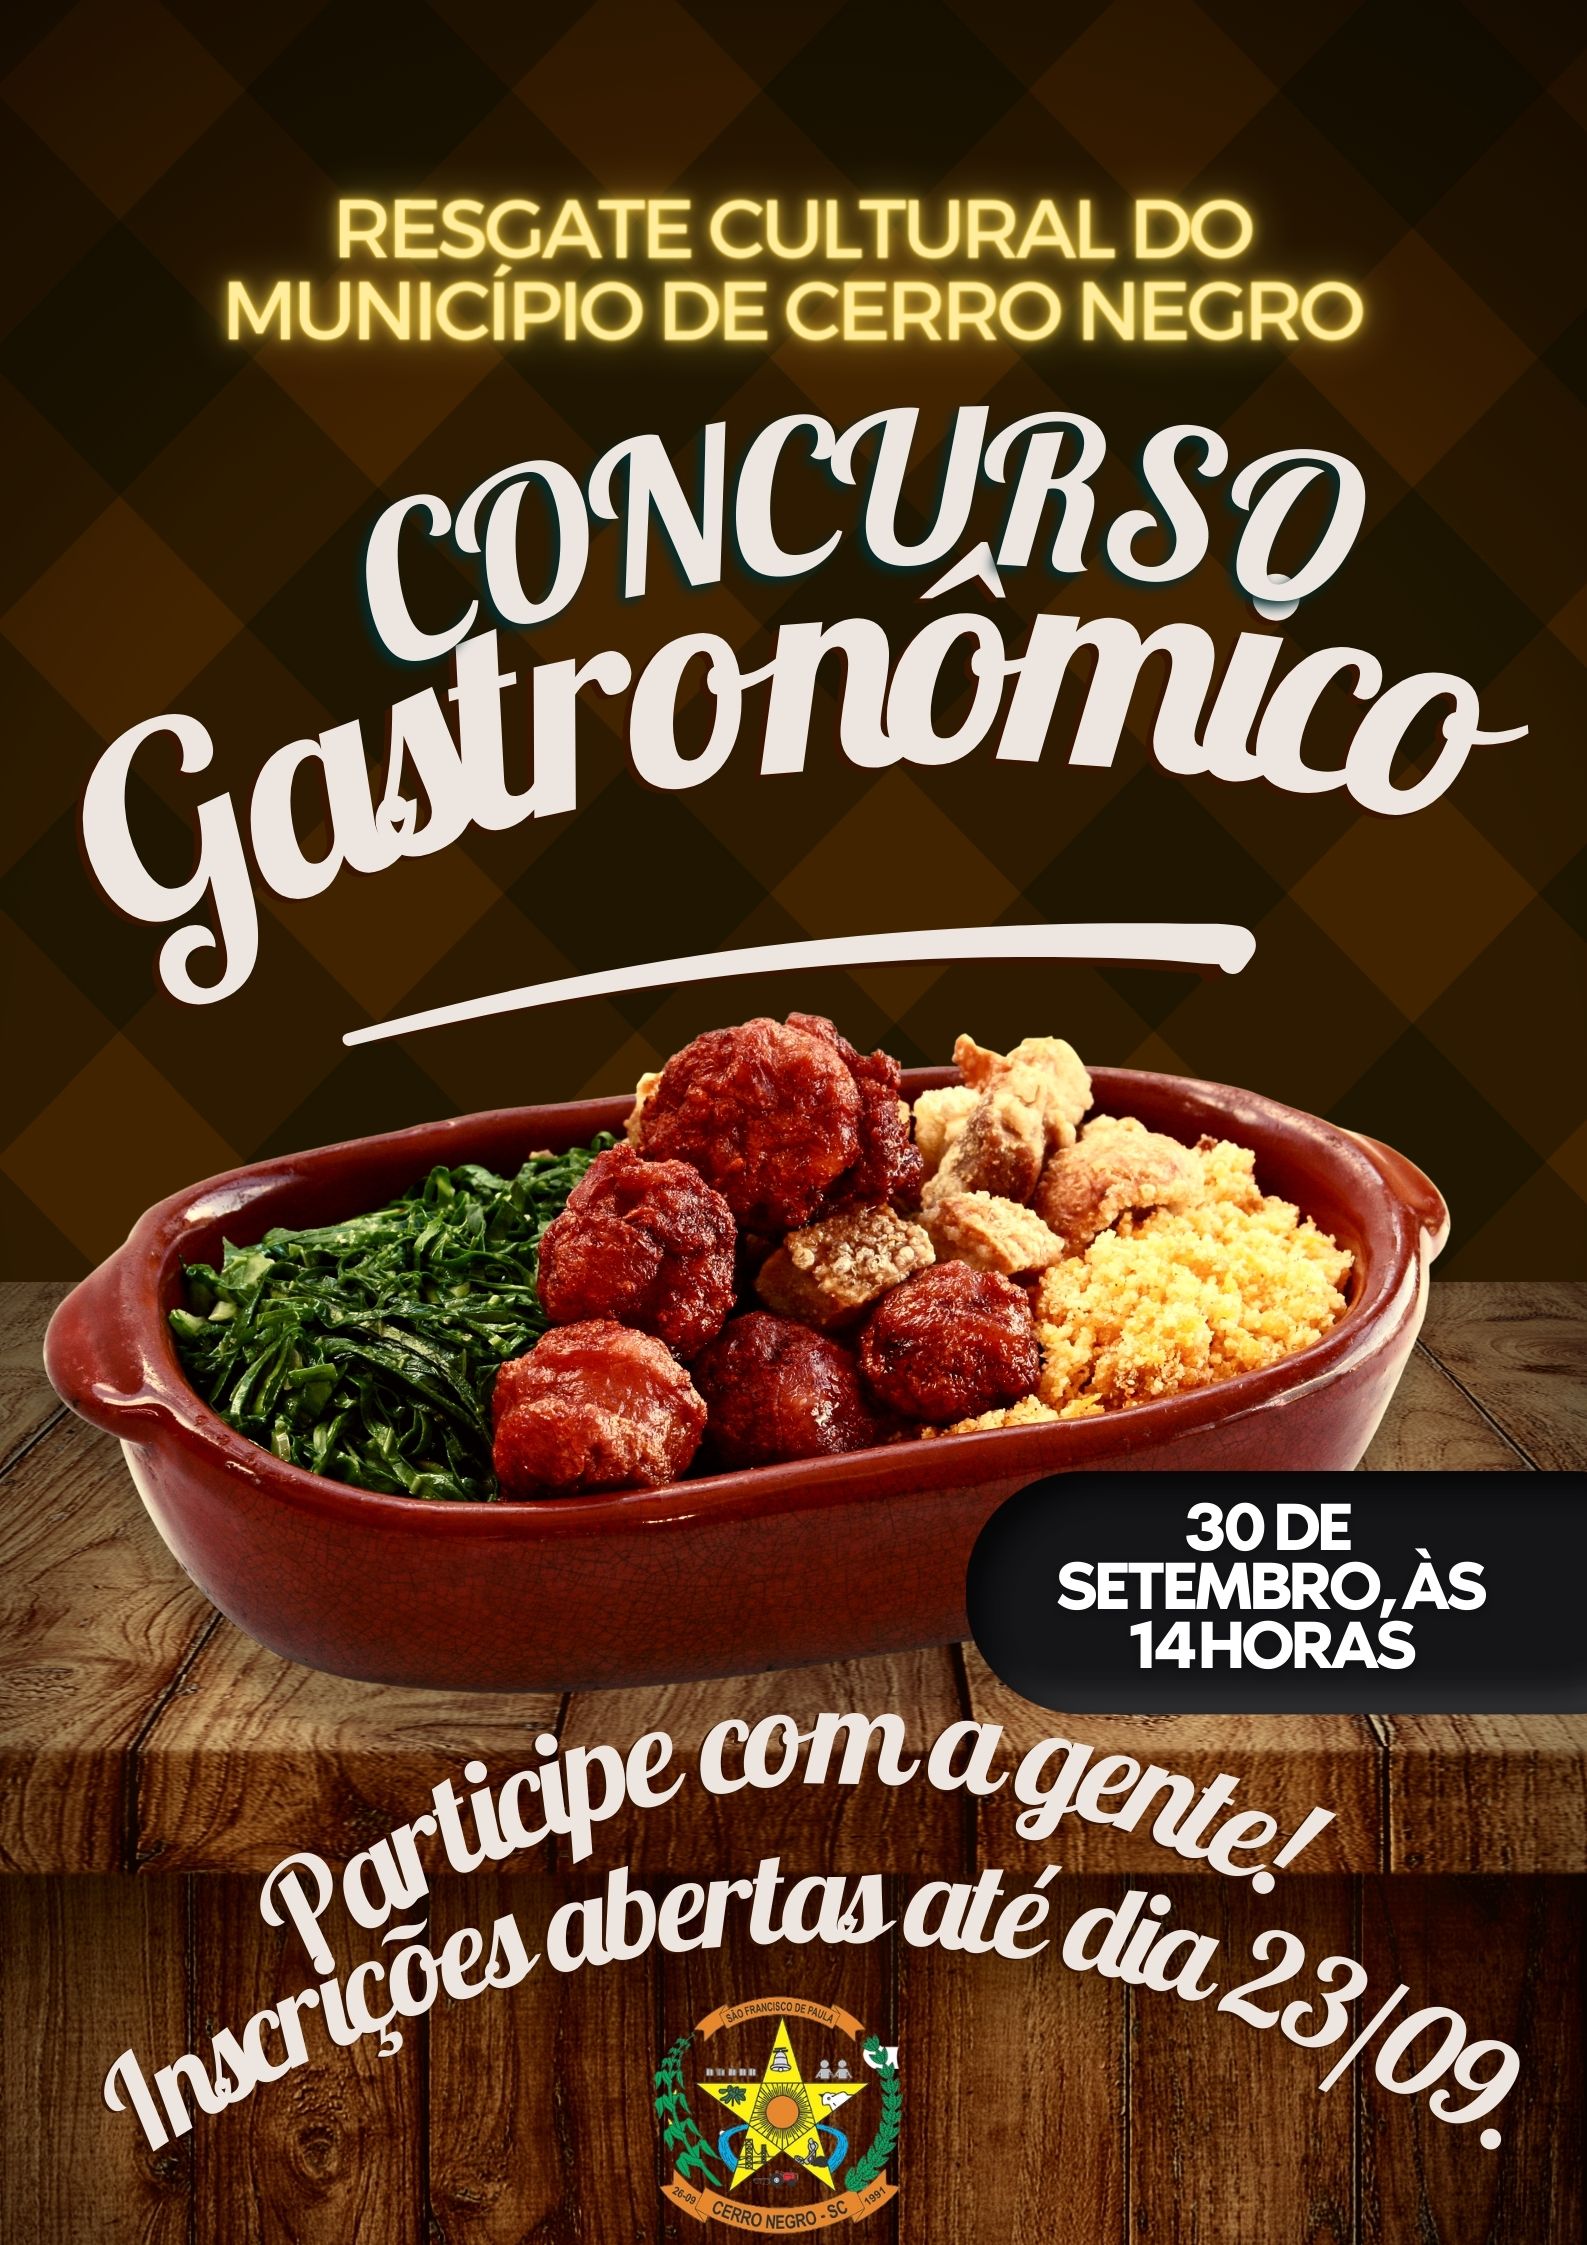 As inscrições para participar do Concurso gastronômico estão abertas até o dia 23/09/2022 às 14:00h.